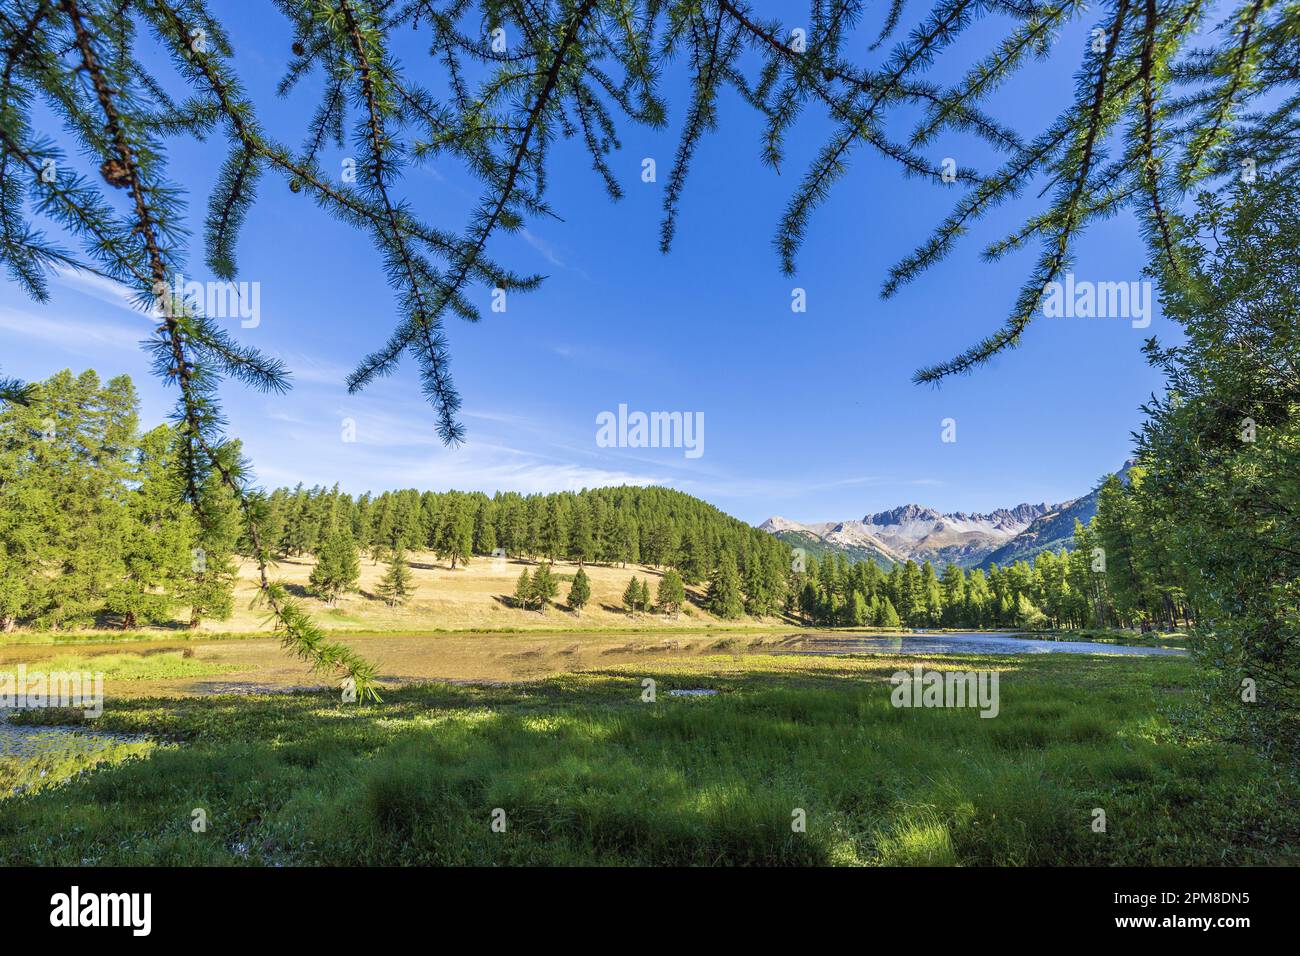 France, Hautes-Alpes, Réserve naturelle régionale de Queyras, lac de Roue (1854 m) entourée d'une forêt de Larch (Larix decidua) Banque D'Images